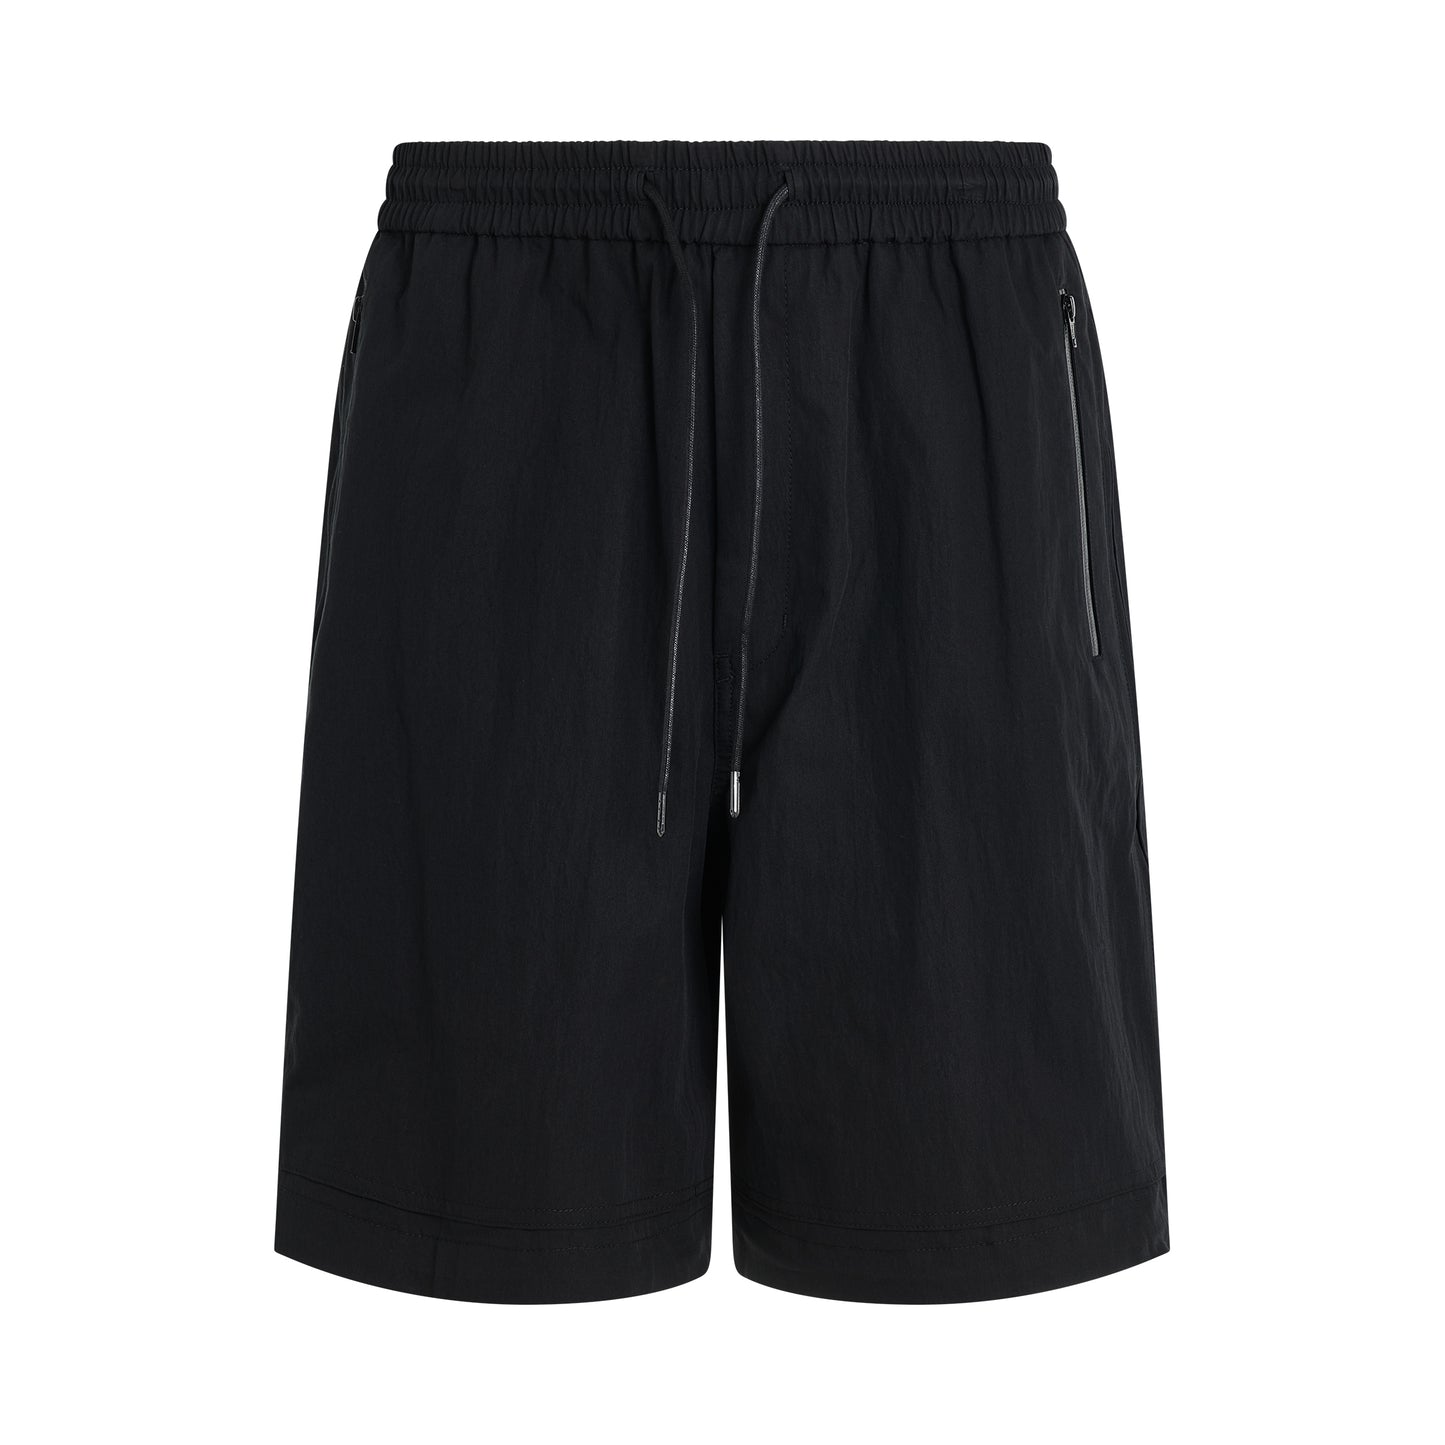 Cotton Side Zipper Shorts in Black